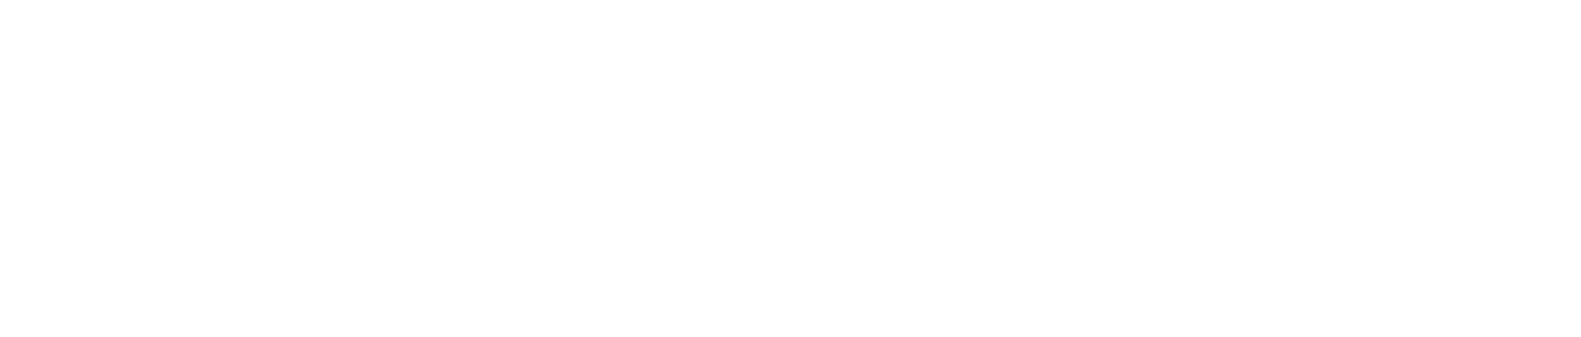 Pagaya Technologies logo grand pour les fonds sombres (PNG transparent)